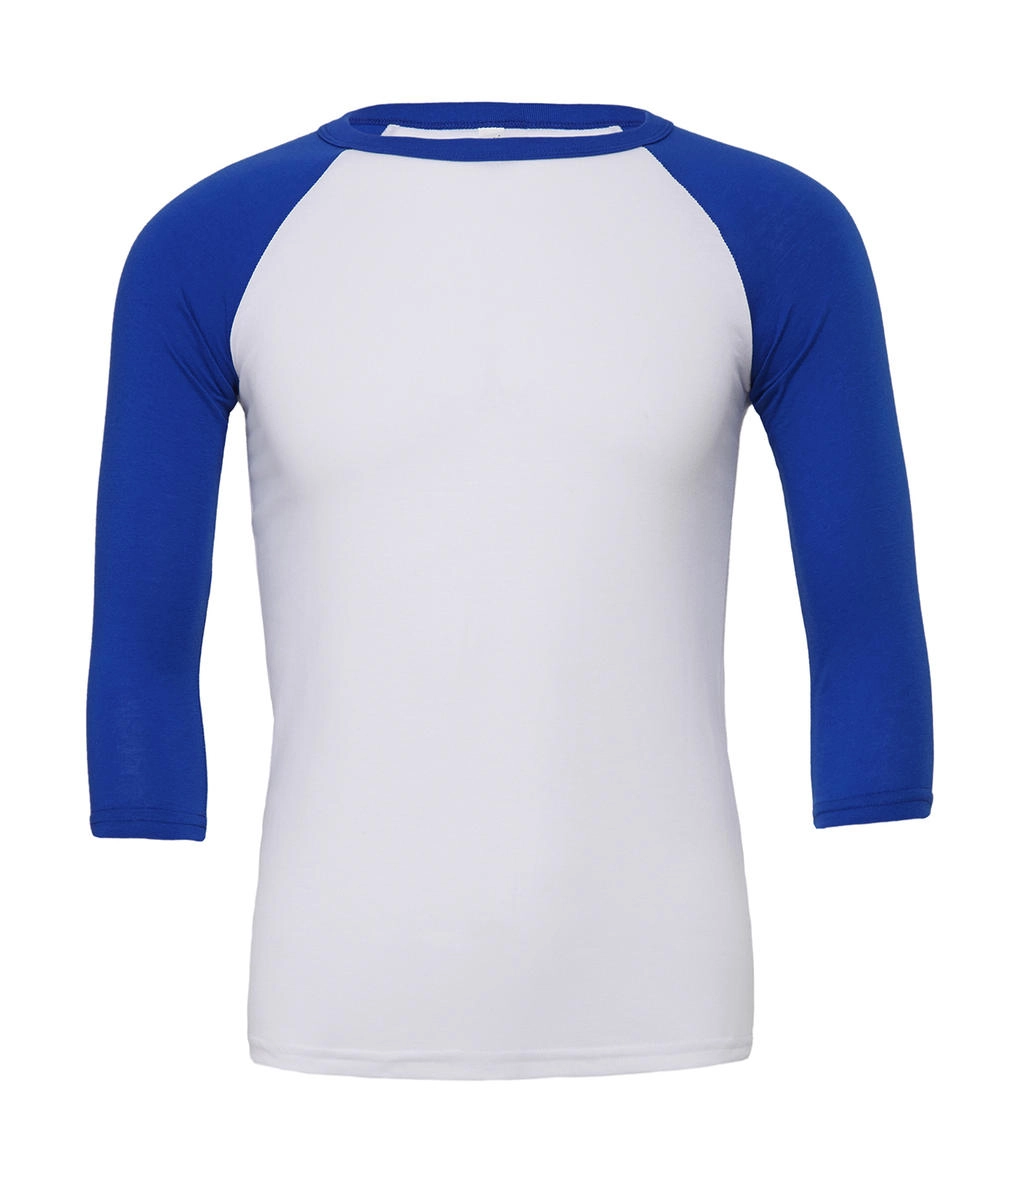 Unisex 3/4 Sleeve Baseball T-Shirt zum Besticken und Bedrucken in der Farbe White/True Royal mit Ihren Logo, Schriftzug oder Motiv.